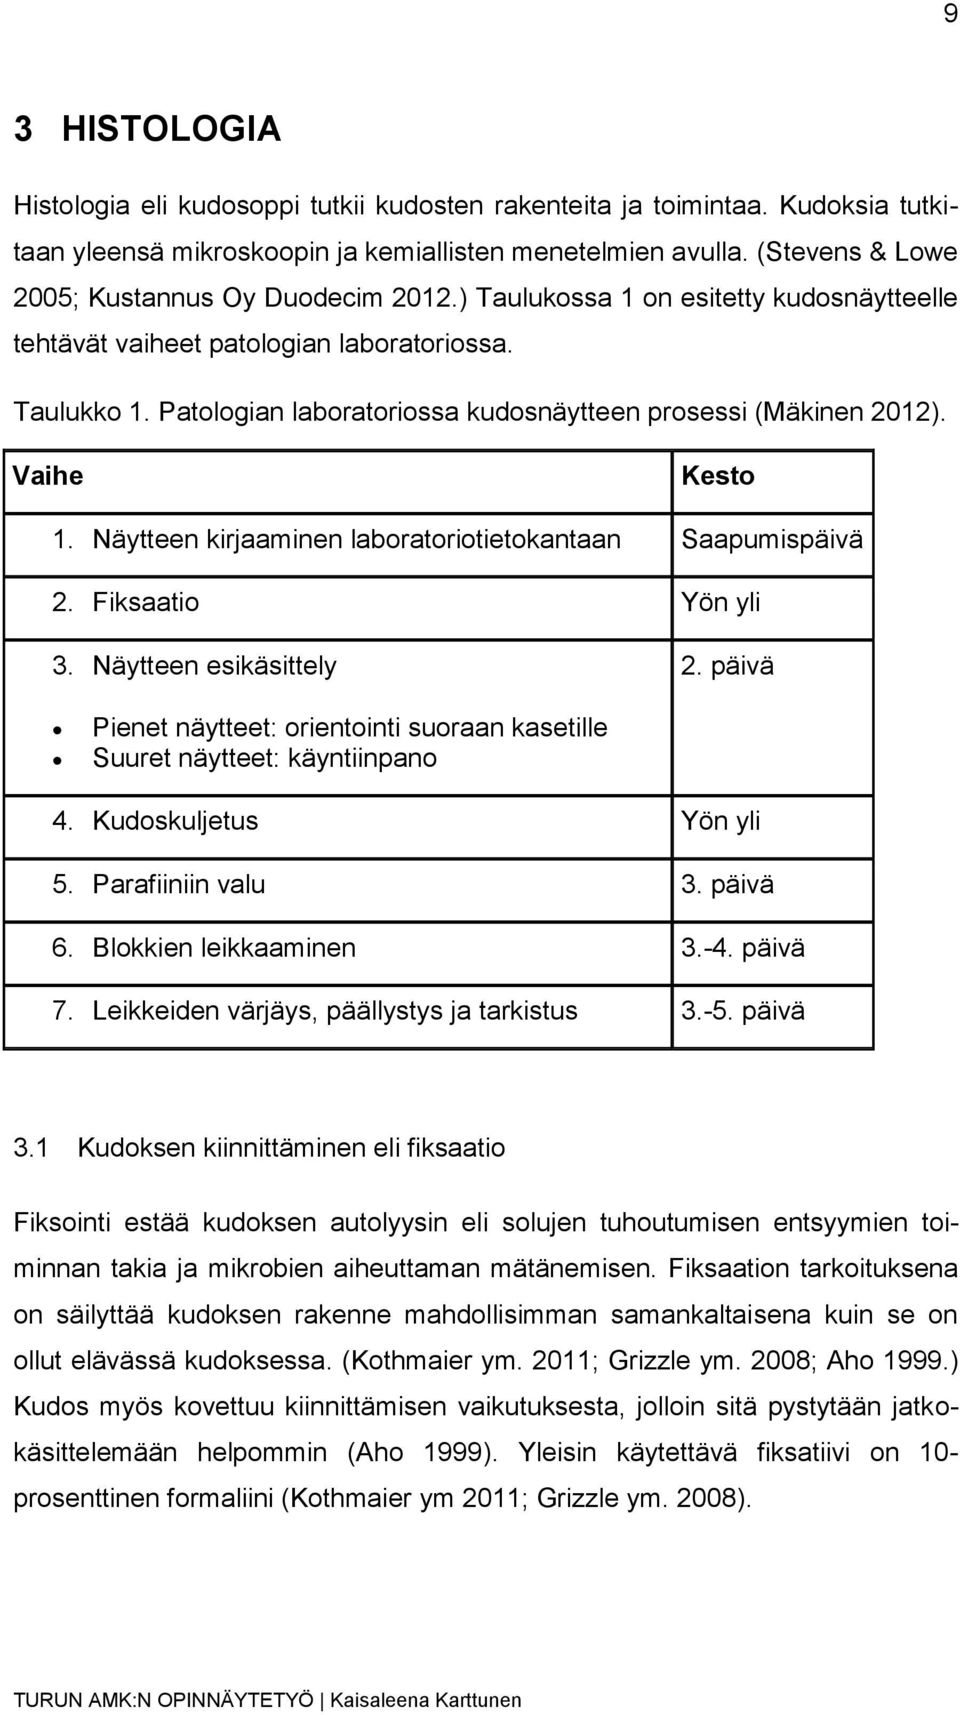 Patologian laboratoriossa kudosnäytteen prosessi (Mäkinen 2012). Vaihe Kesto 1. Näytteen kirjaaminen laboratoriotietokantaan Saapumispäivä 2. Fiksaatio Yön yli 3. Näytteen esikäsittely 2.